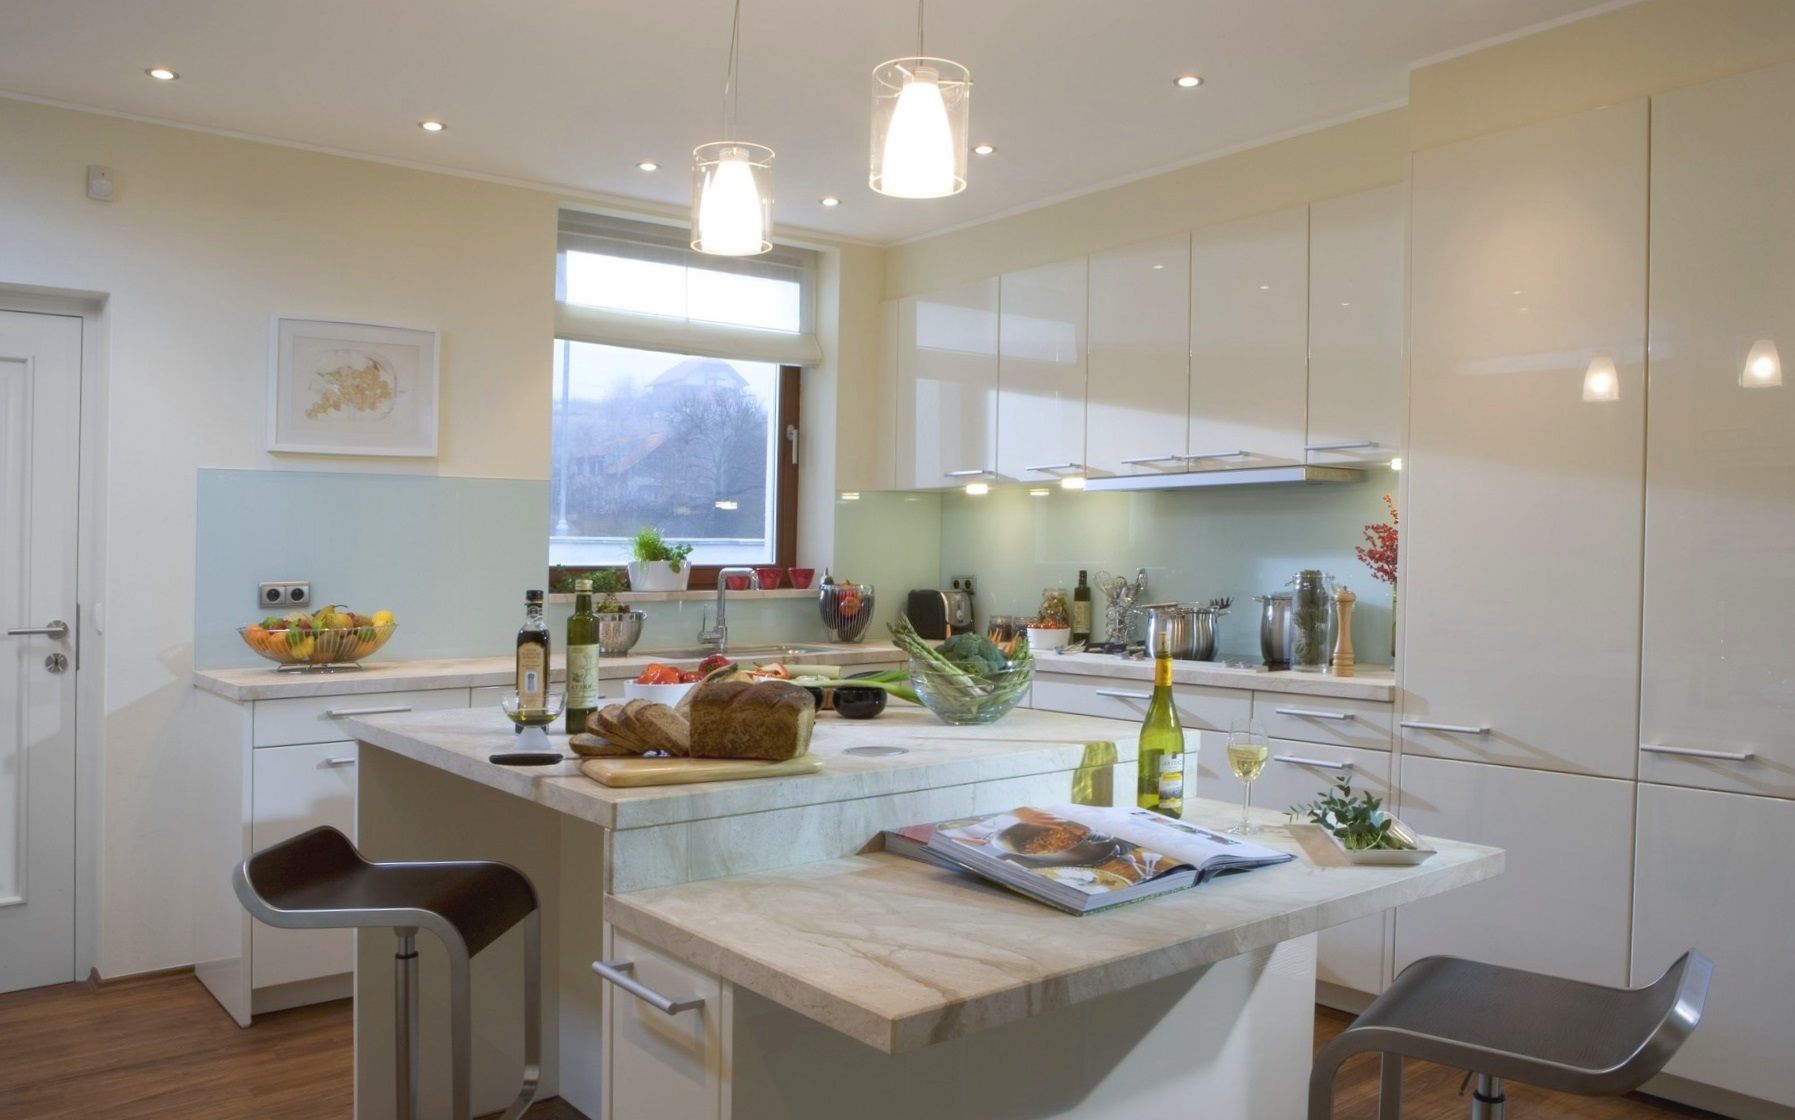 Кухня Асия встроенная белого цвета с глянцевой поверхностью 